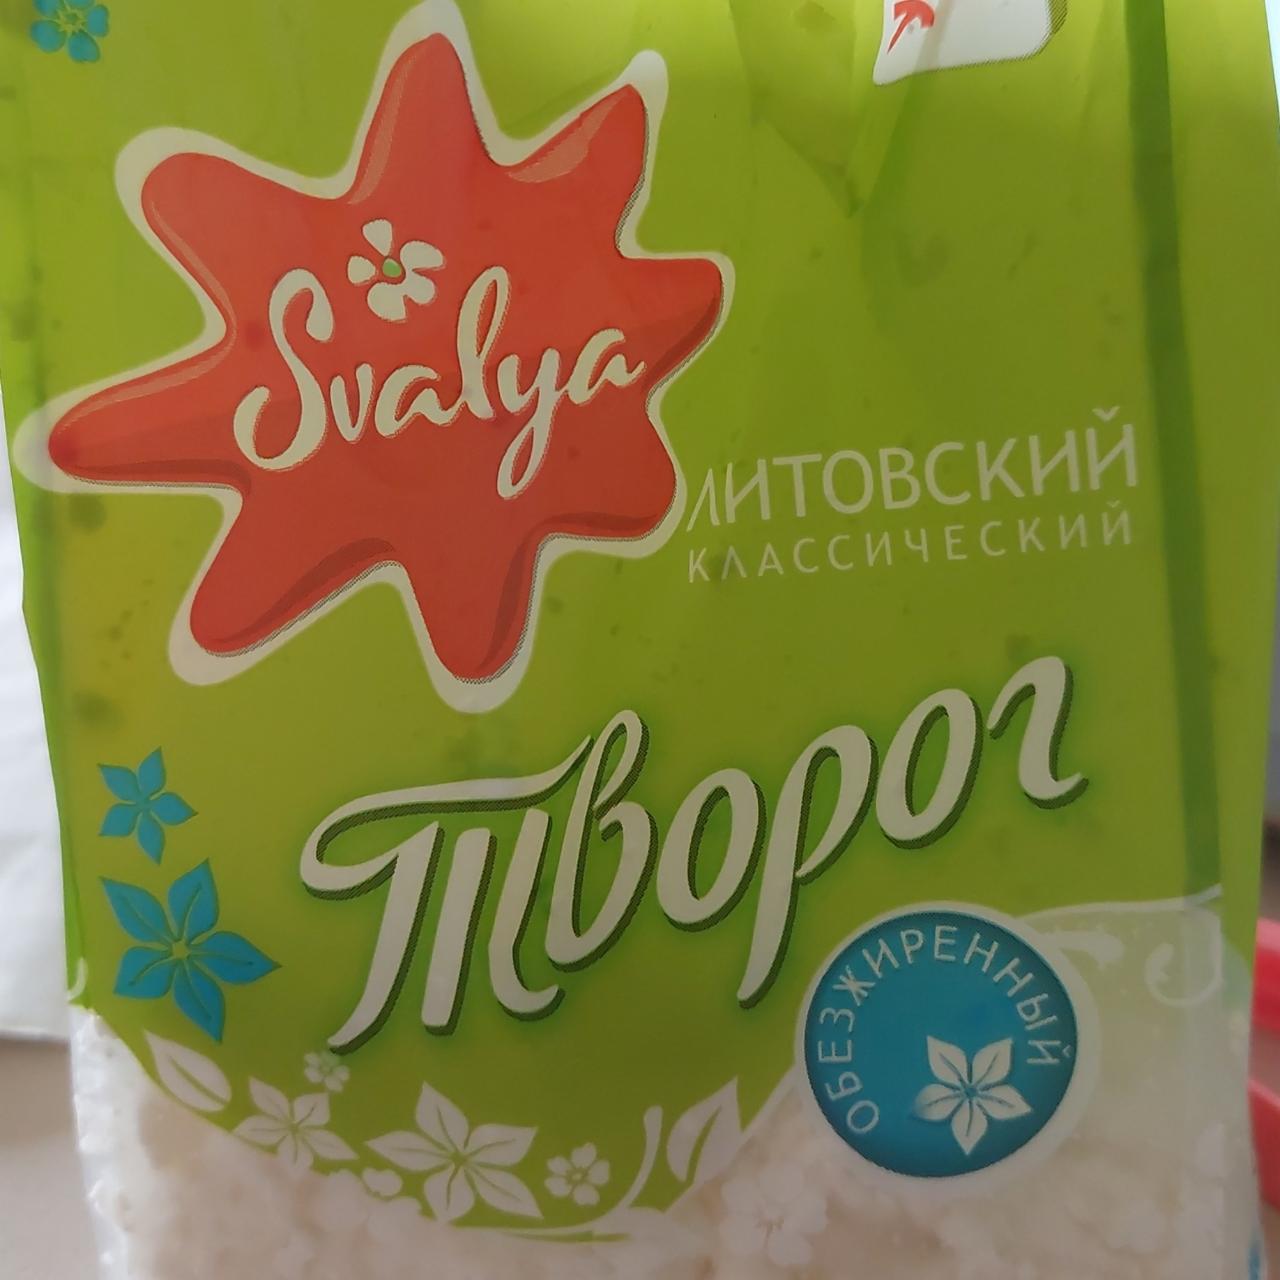 Фото - Сир кисломолочний 0.5% Творог Литовский Svalya